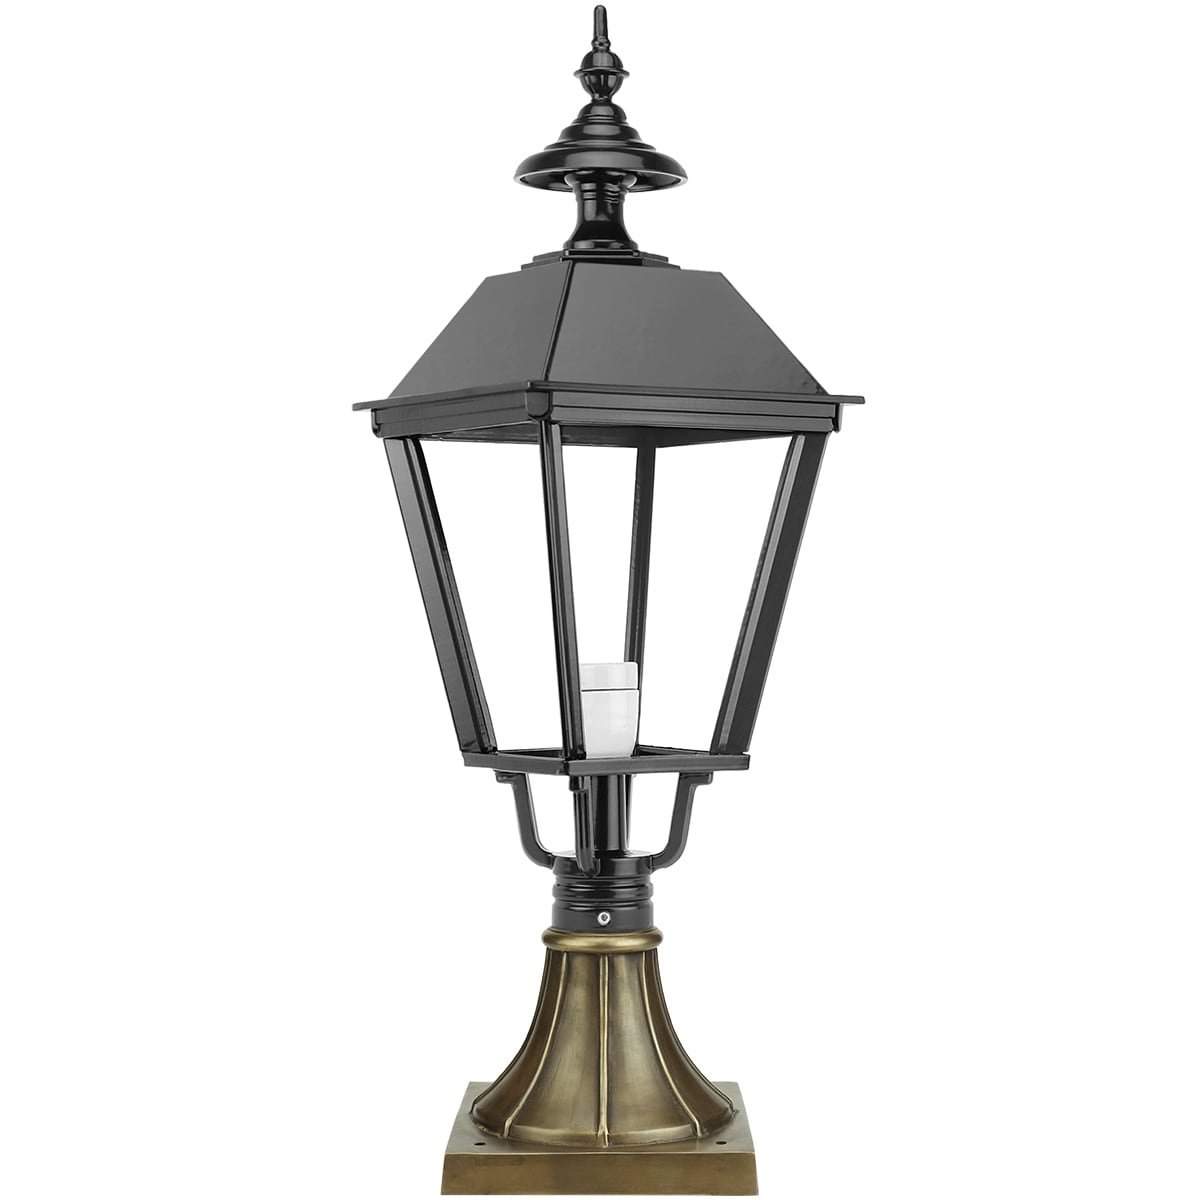 Lampe sur socle Eexterveen bronze - 77 cm